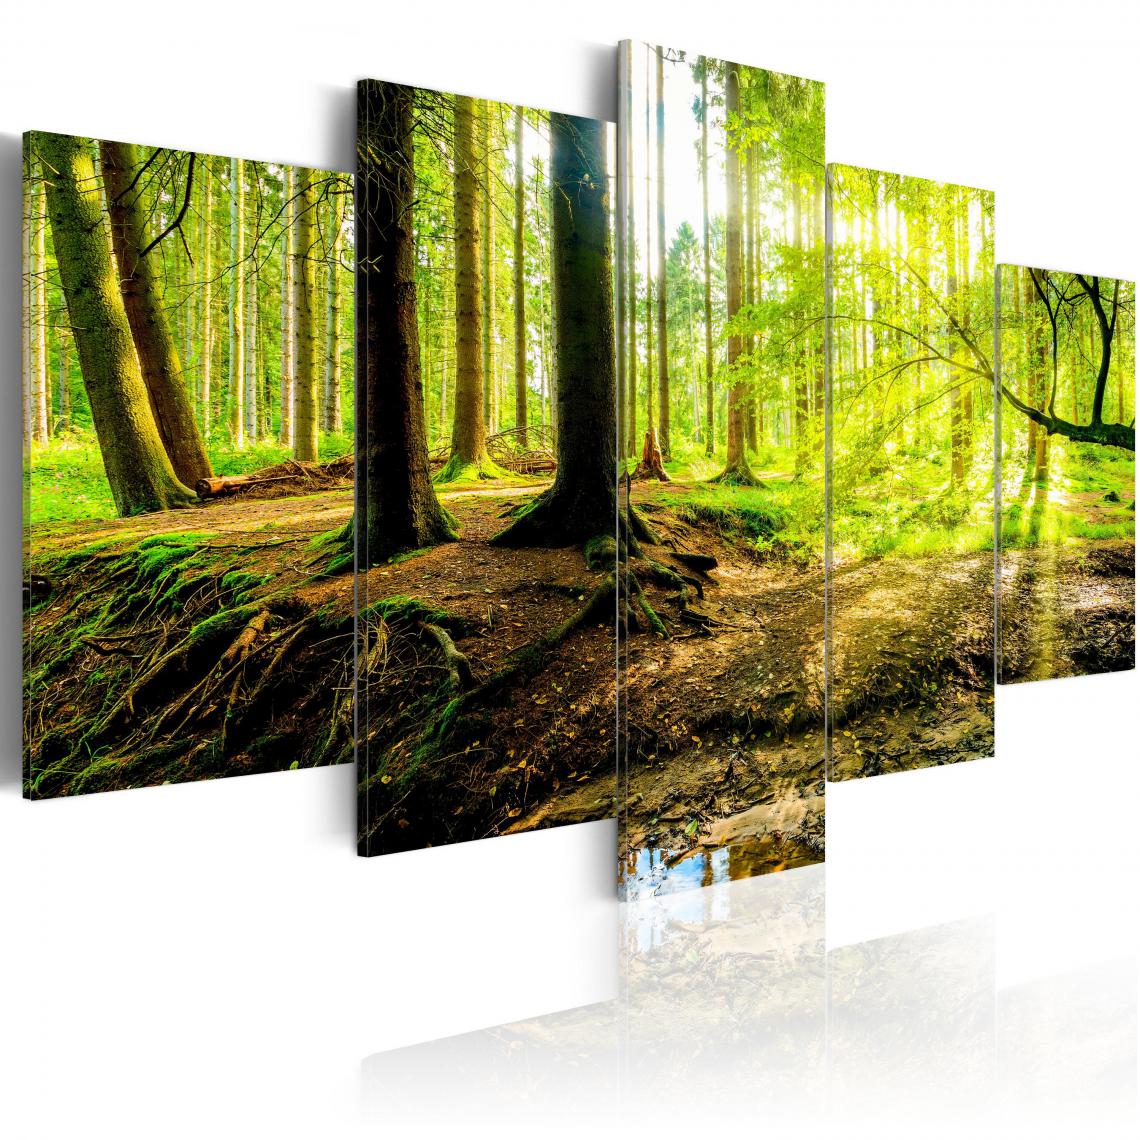 Decoshop26 - Tableau sur toile en 5 panneaux décoration murale image imprimée cadre en bois à suspendre Poésie d'une forêt 100x50 cm 11_0006352 - Tableaux, peintures